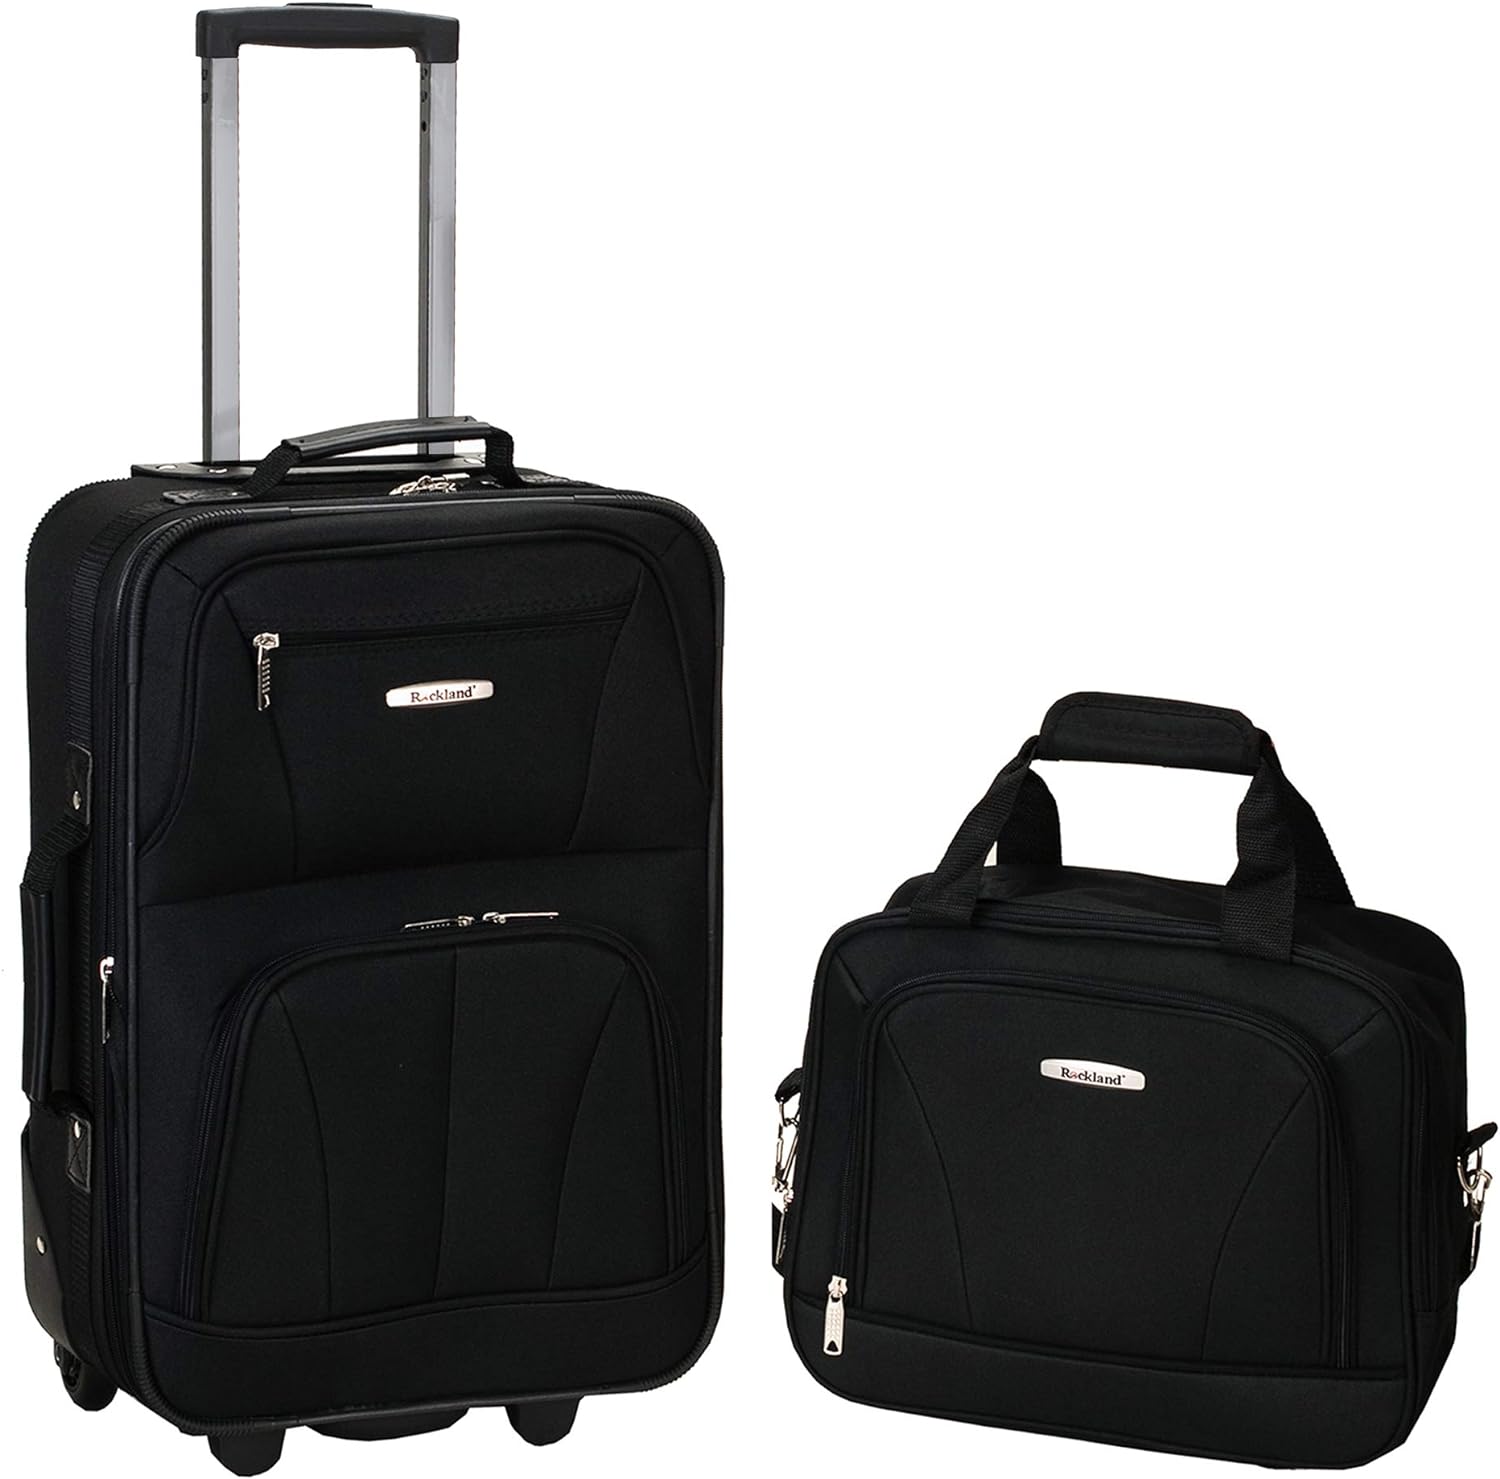 Rockland Fashion Softside Upright Luggage Set, Expandable, Black, 2-Piece (14:19)